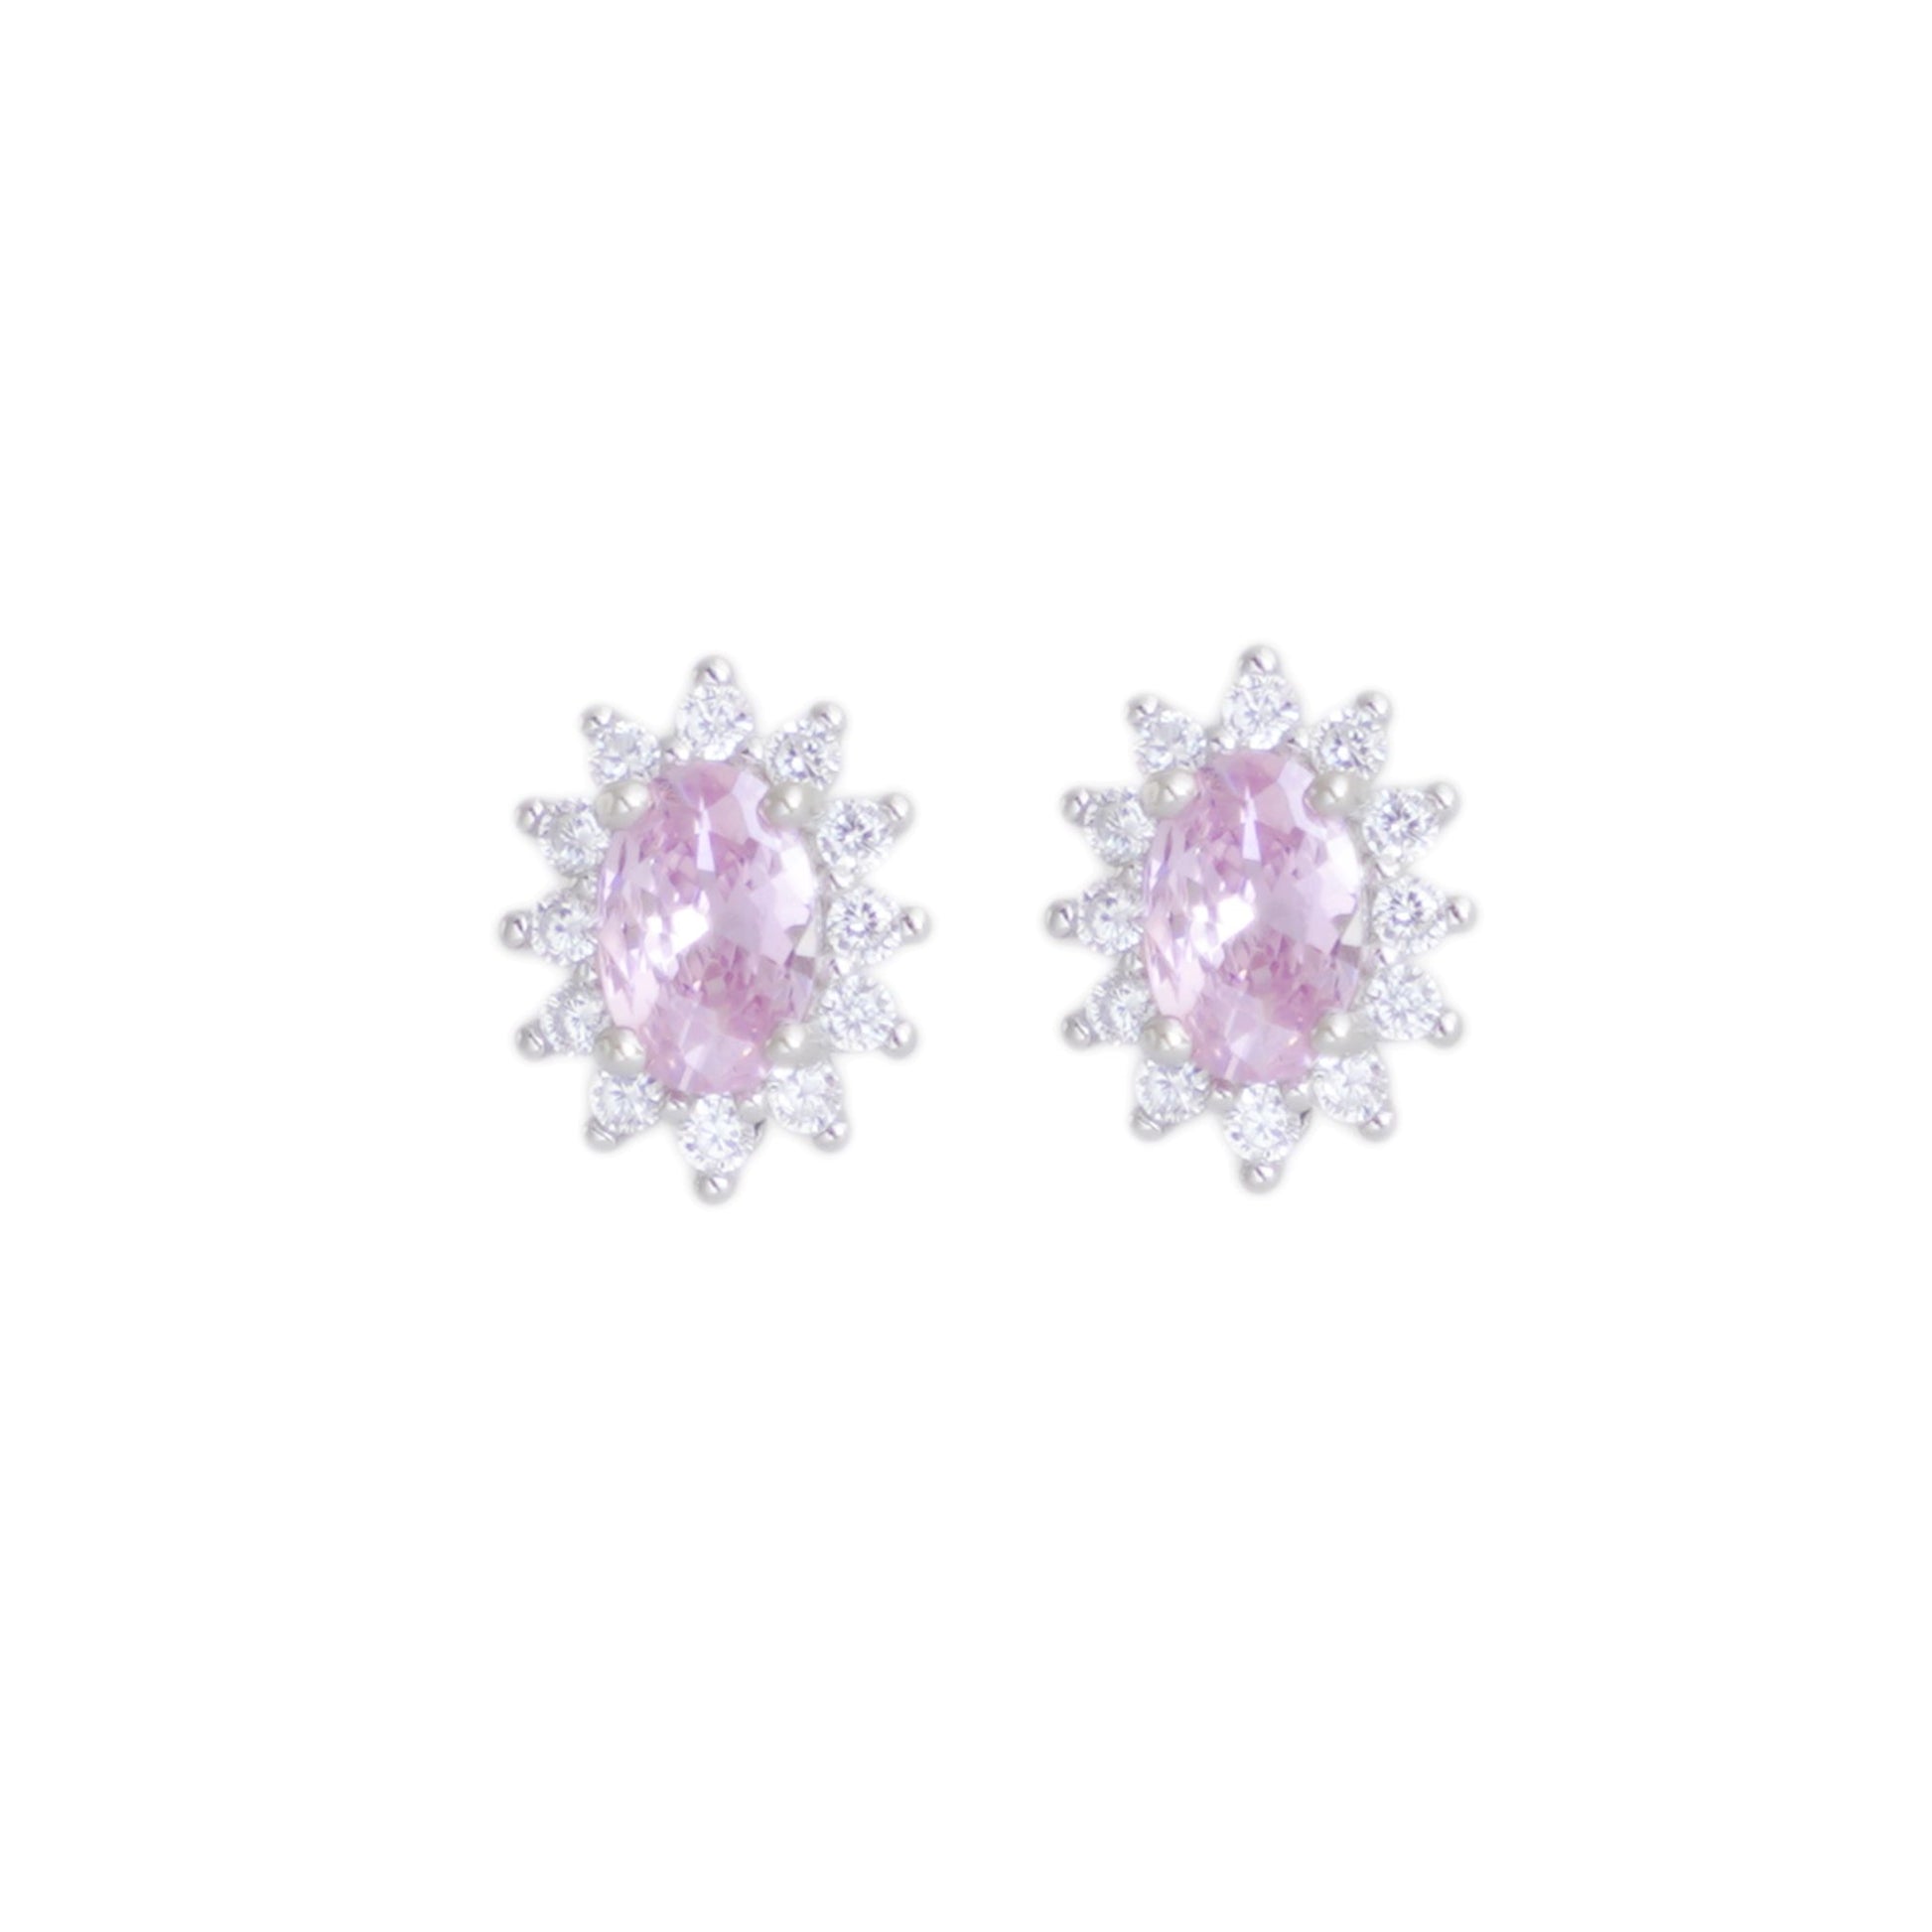 Sparkling Pink Oval CZ Cluster Stud Earrings in 925 Sterling Silver - sugarkittenlondon